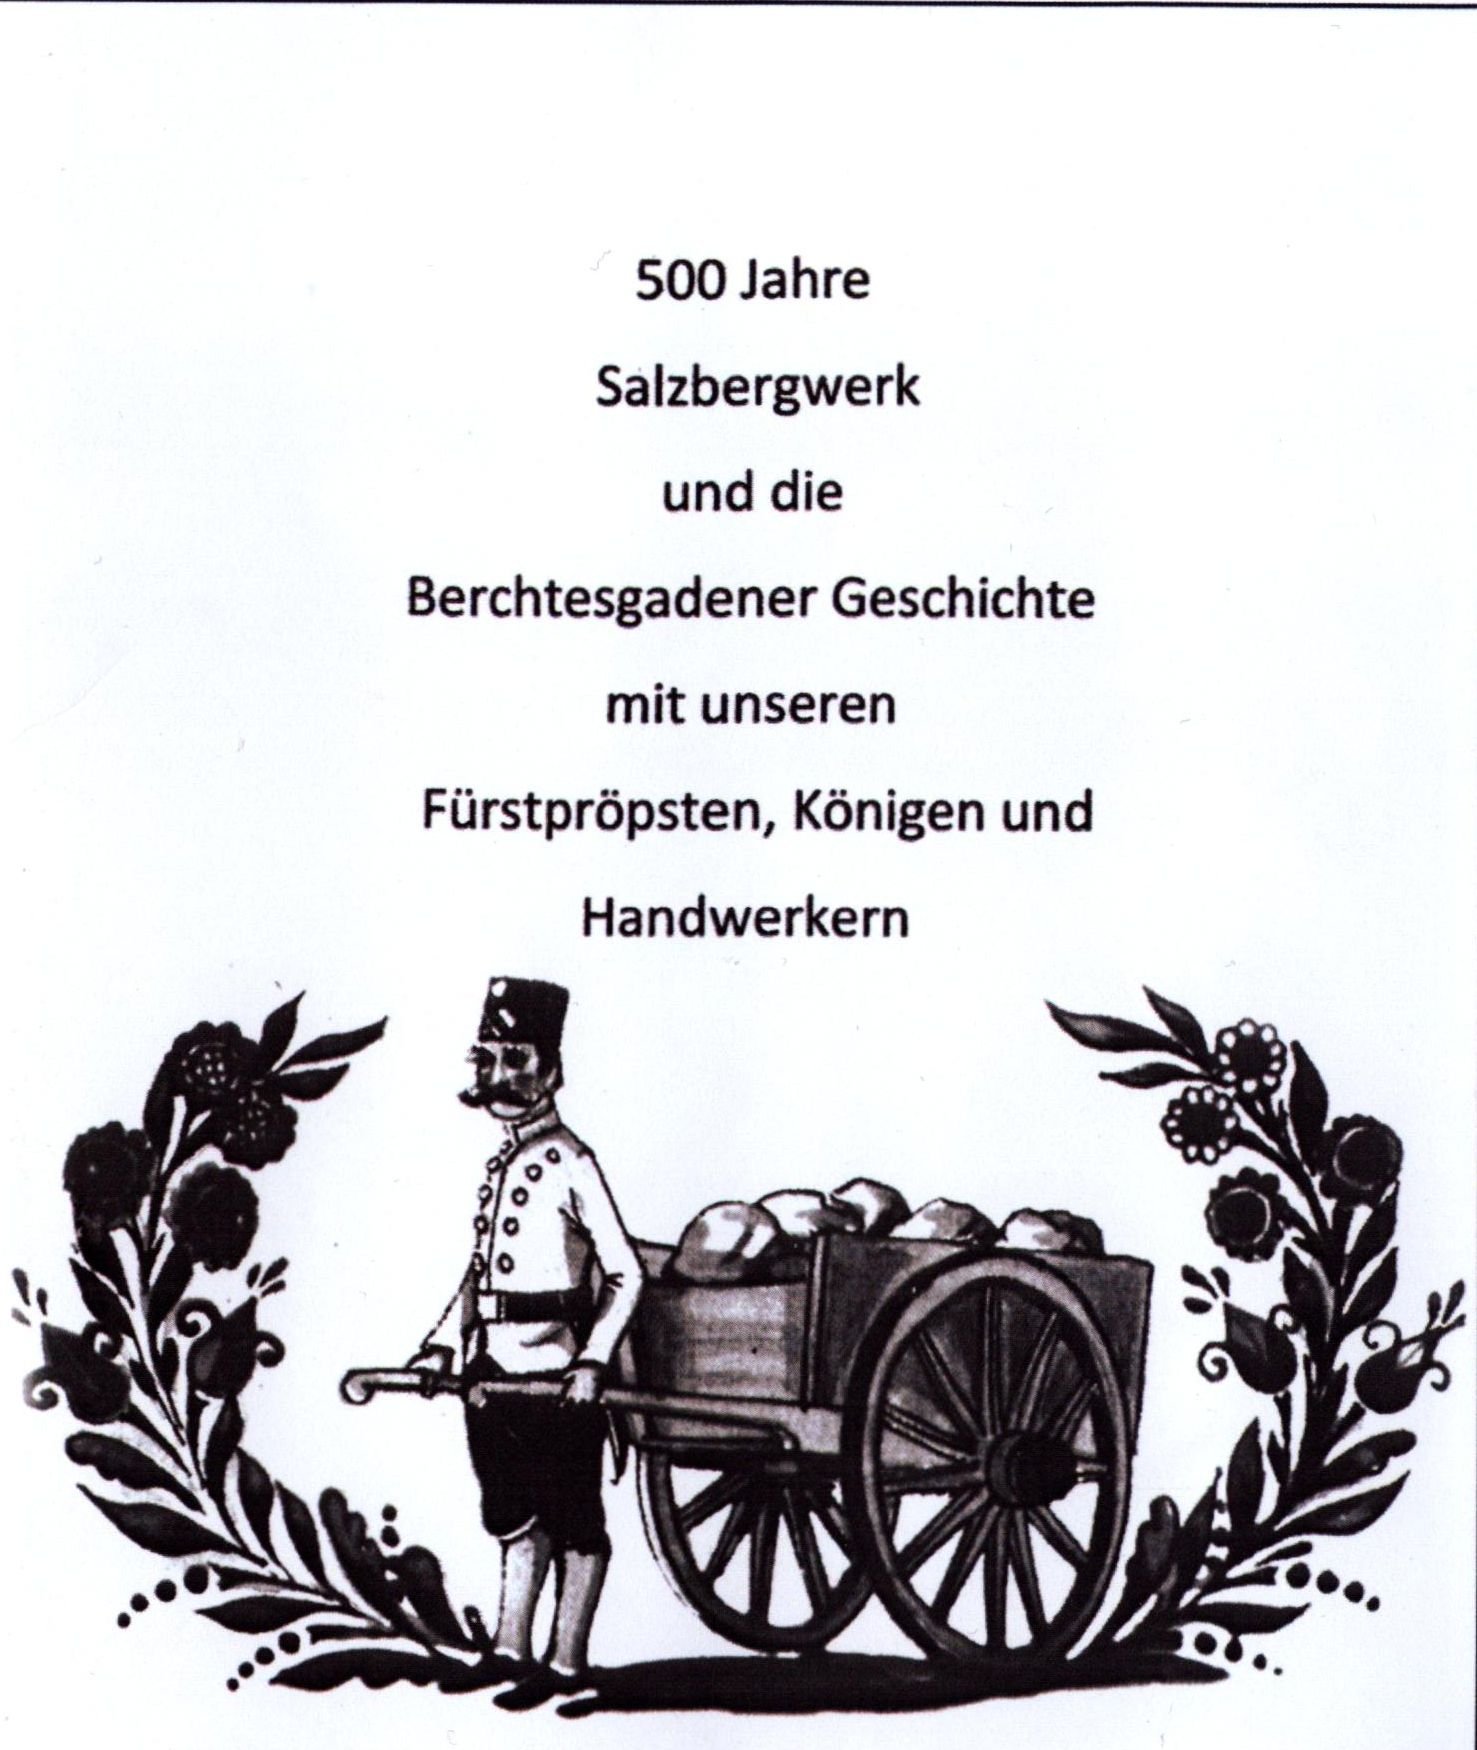 500 Jahre Salzbergwerk und die Berchtesgadener Geschichte mit unseren Fürstpröpsten, Königen und Handwerkern (Archiv SAXONIA-FREIBERG-STIFTUNG CC BY-NC-SA)